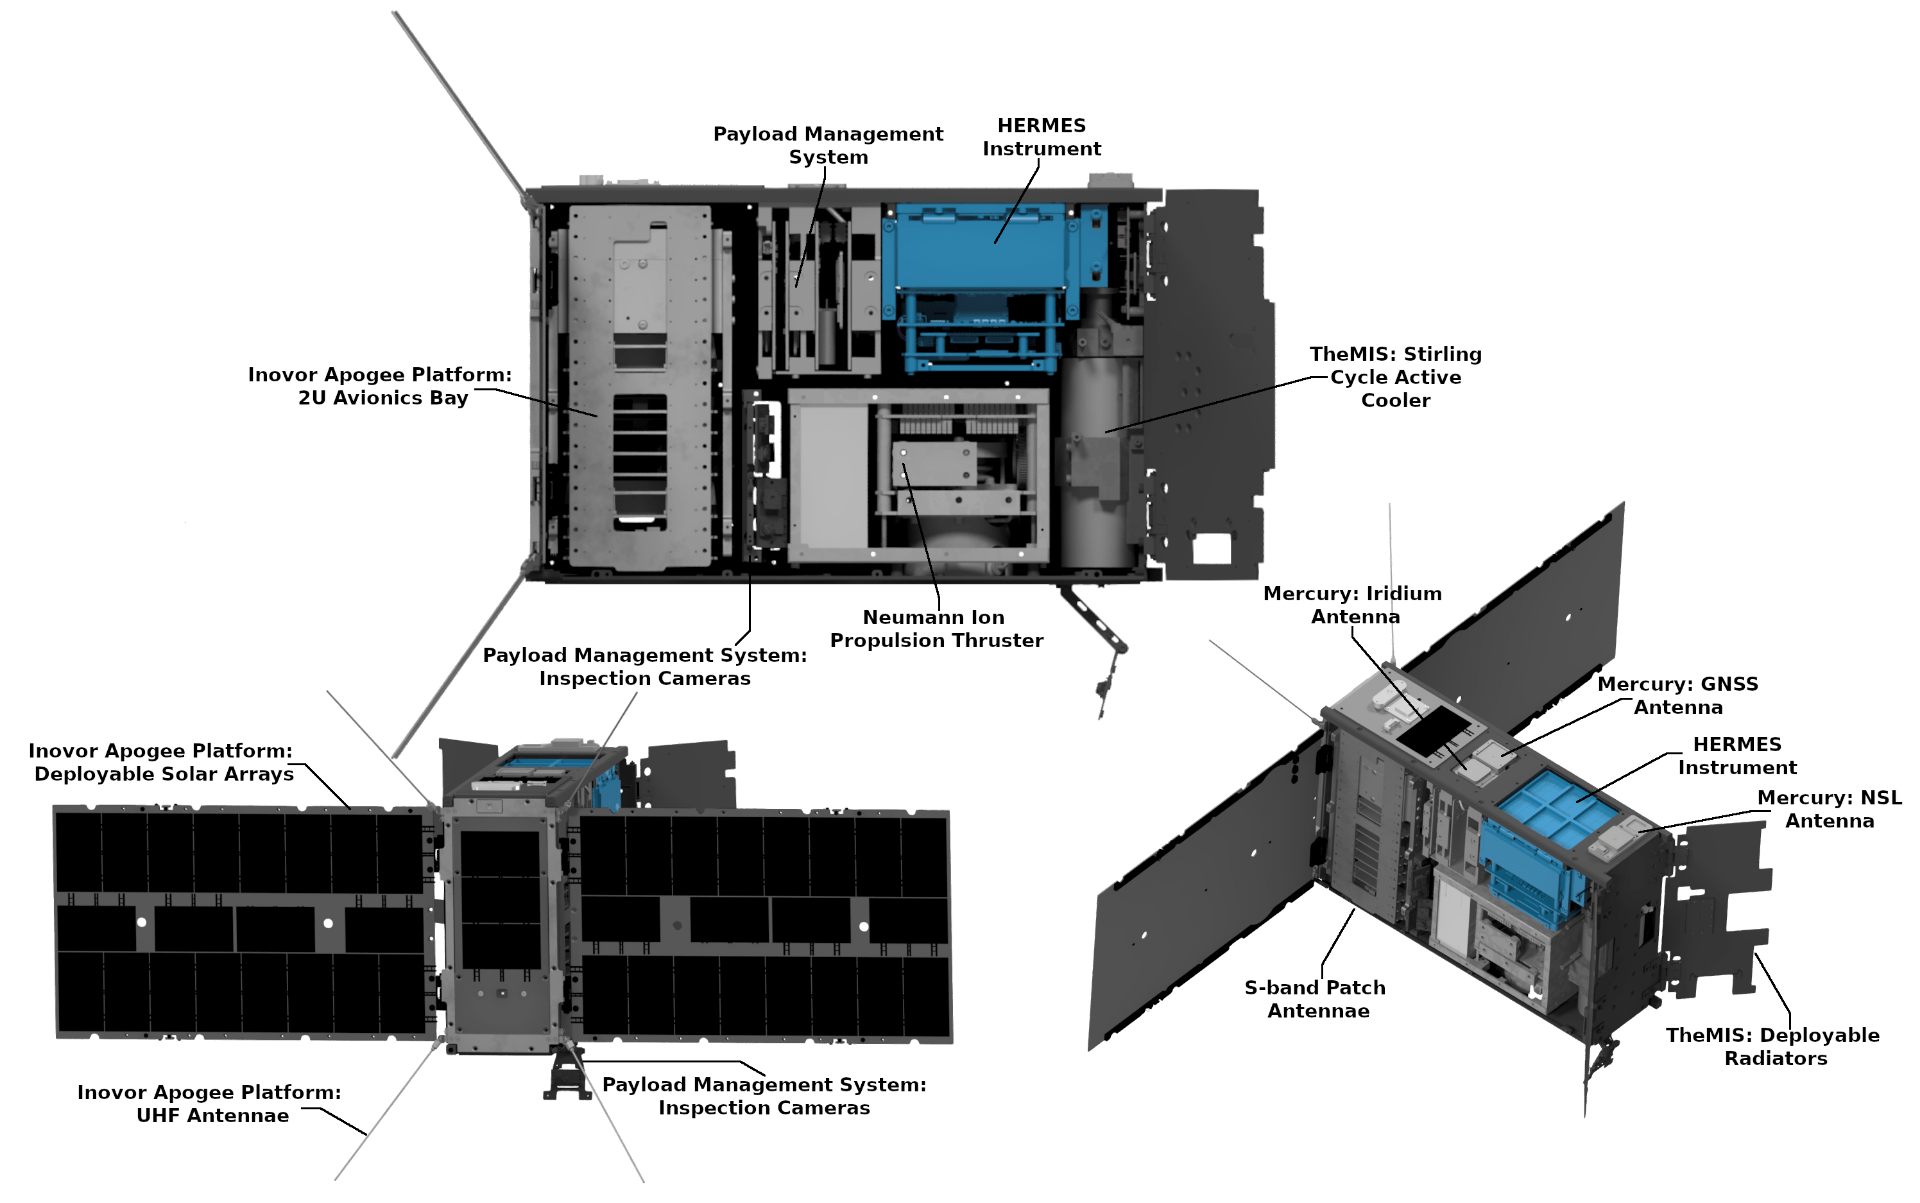 The SpIRIT Spacecraft & Payloads